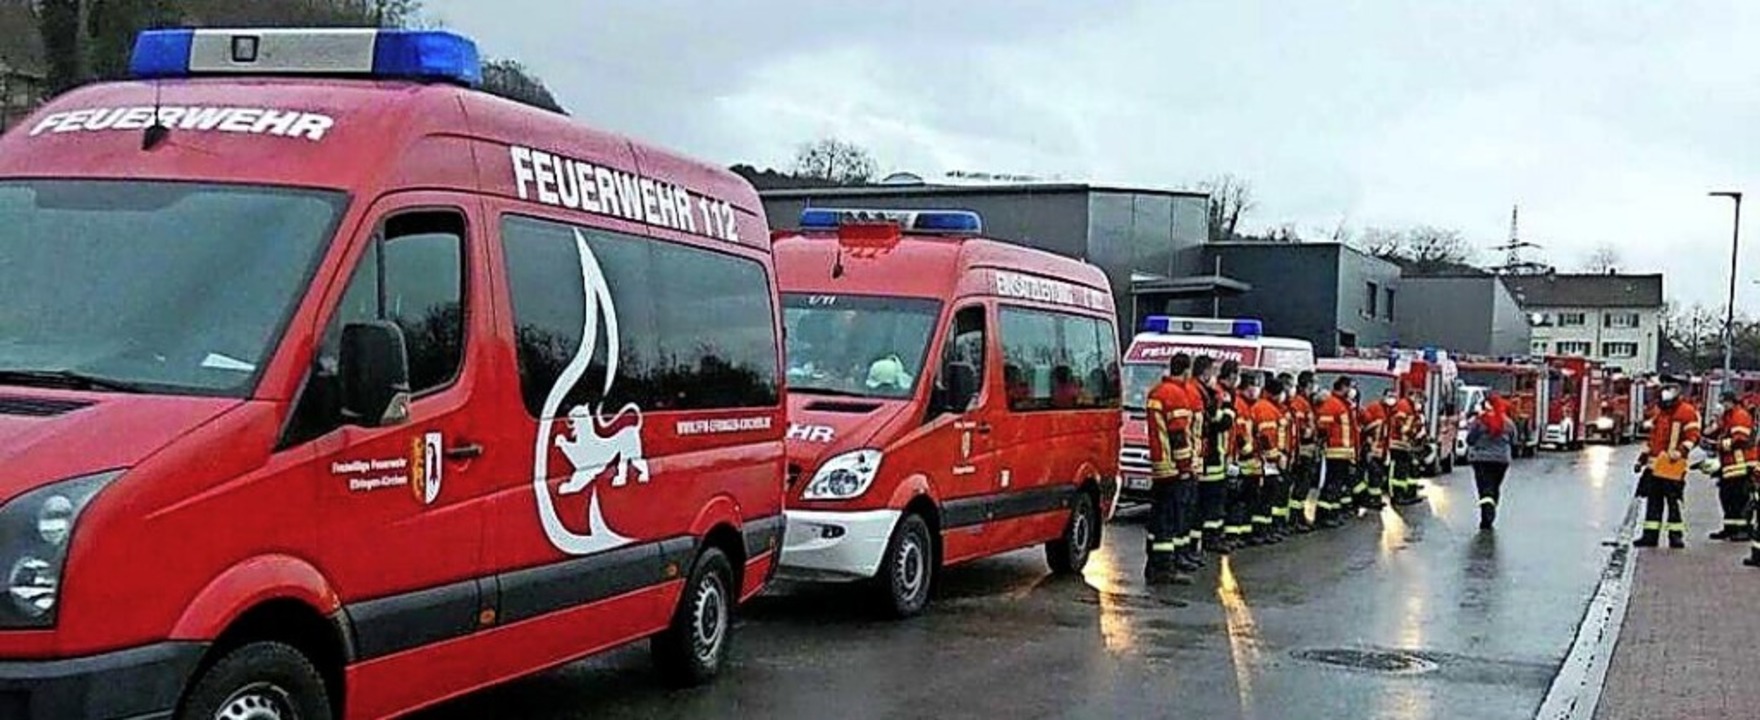 Bei den Feuerwehr-Konvois der Gesamtwe...ufstellung der Fahrzeuge im Jahr 2020.  | Foto: Feuerwehr Kleinkems